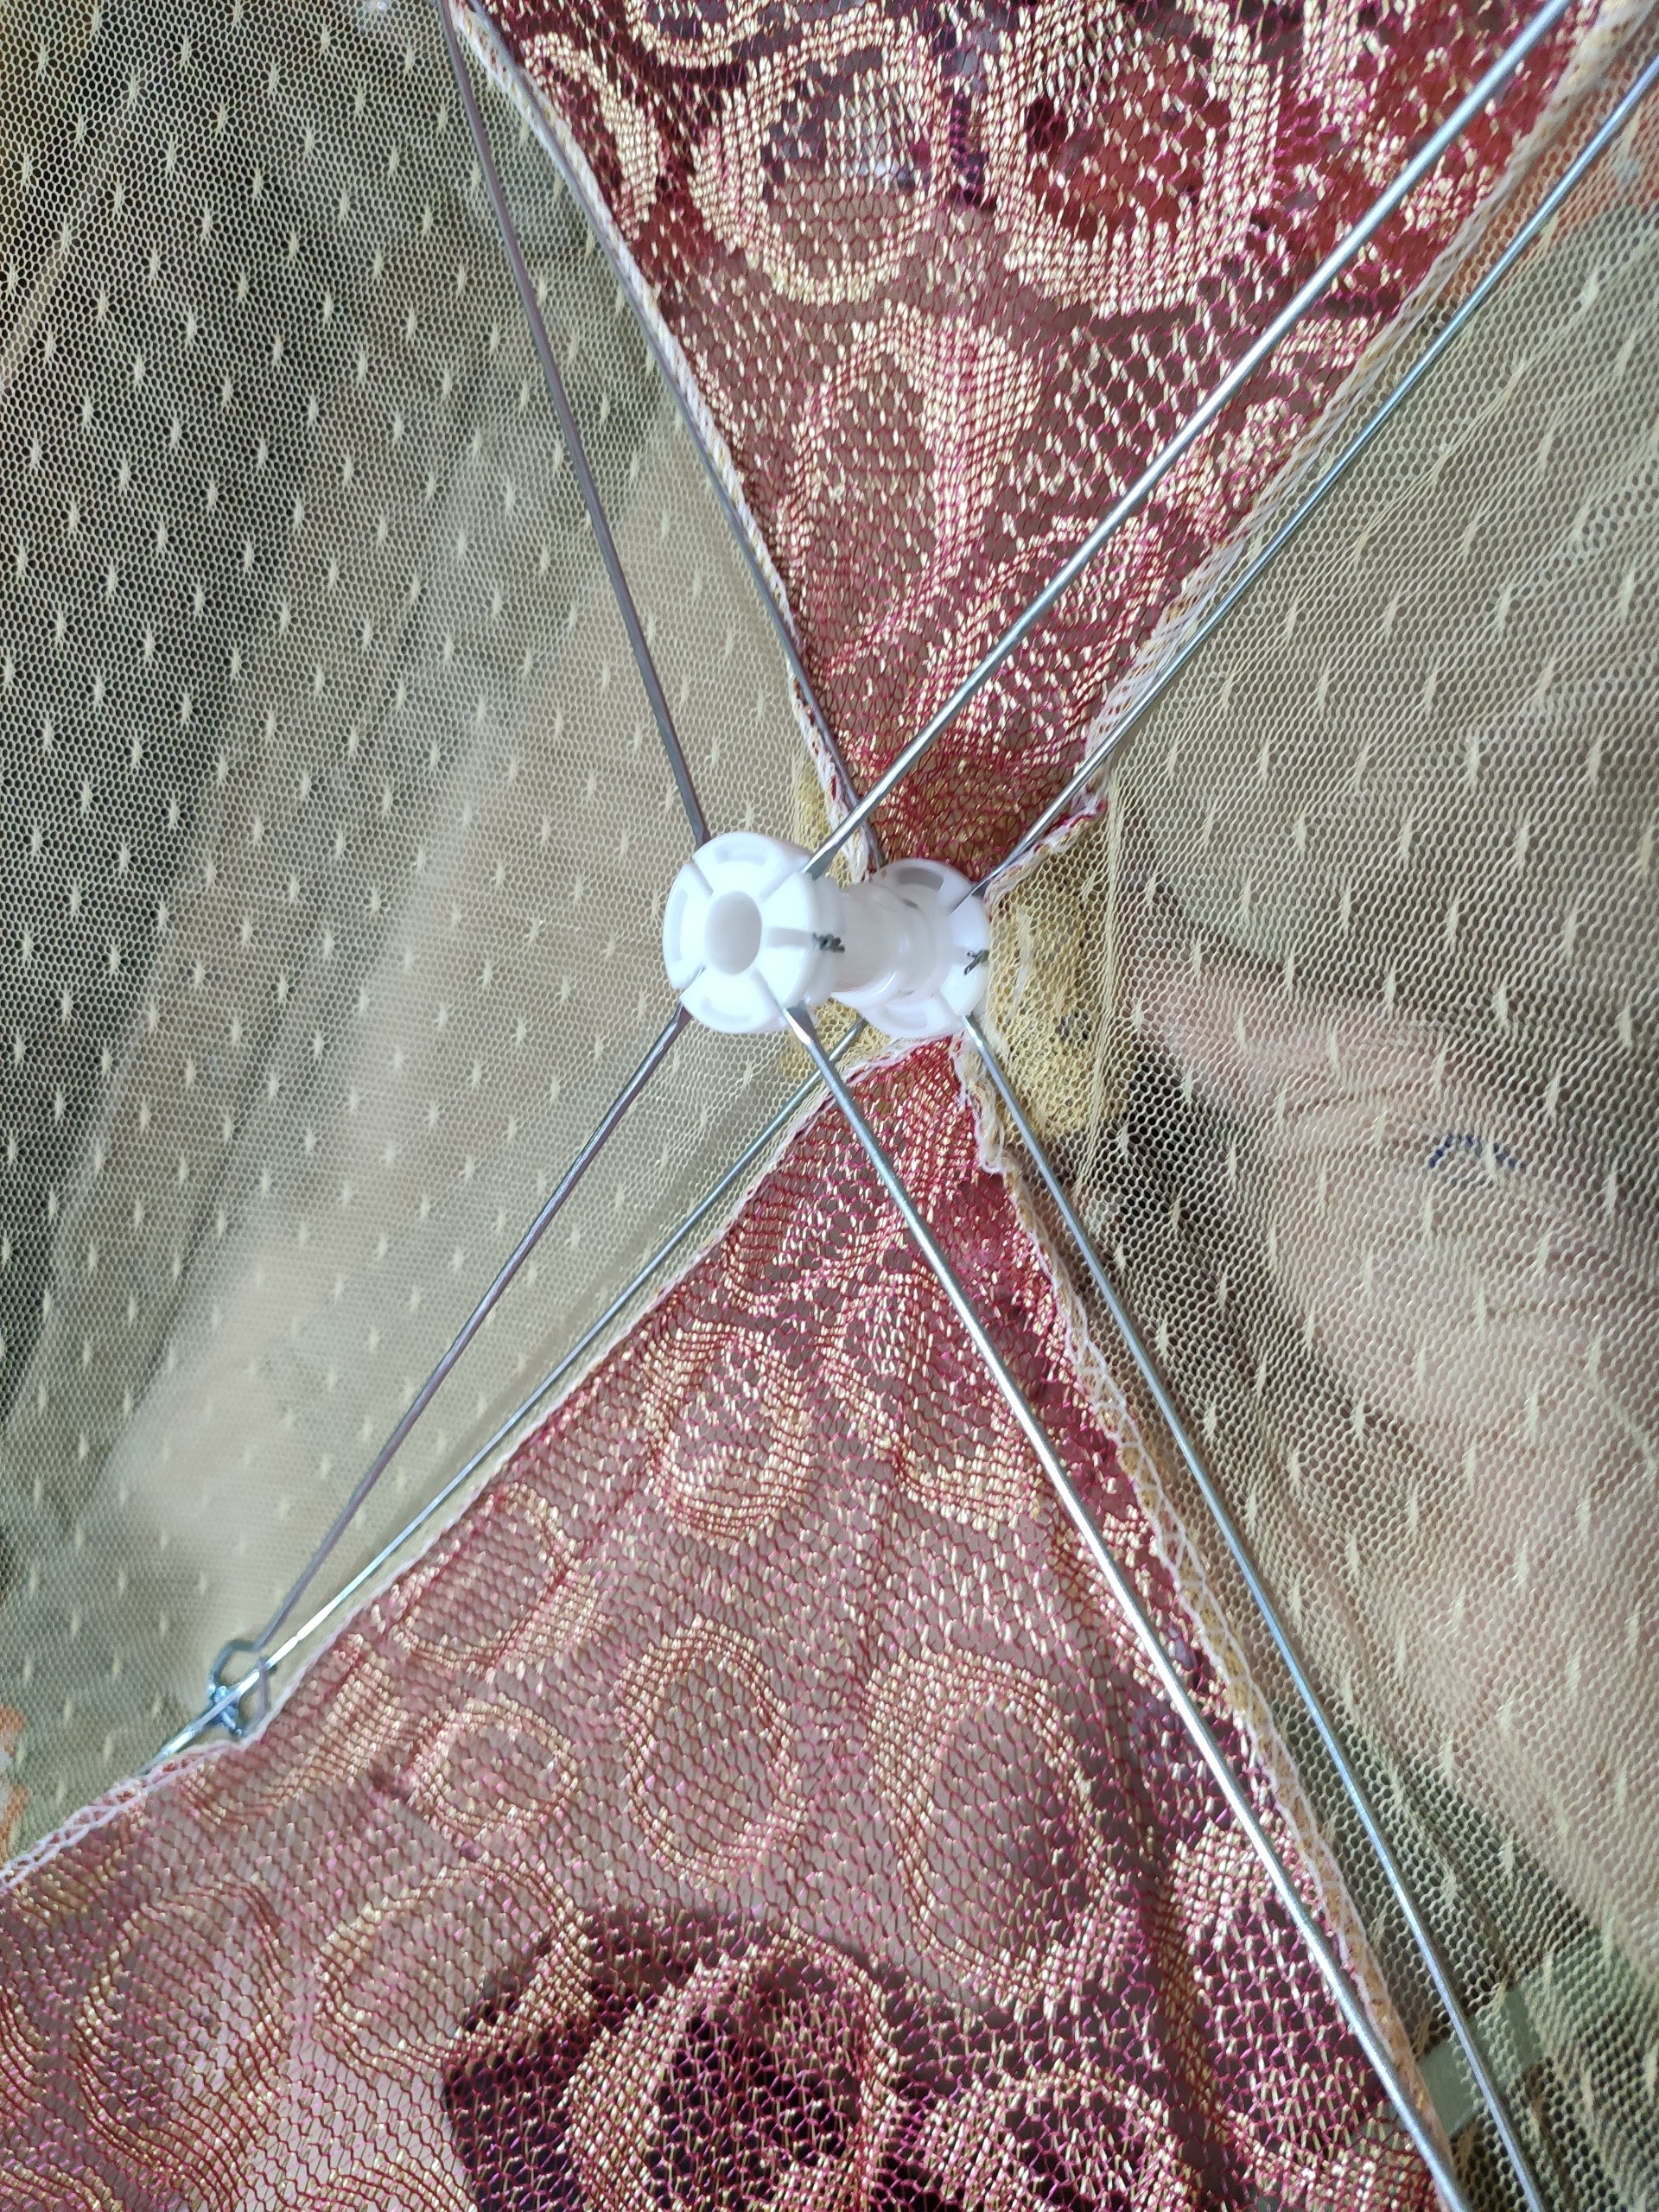 Lồng Bàn Vải Ren Cao Cấp mang phong cách tân cổ điển -Kích thước 60 x 45cm - Lồng dạng lưới đậy thức ăn dễ dàng mở và xếp gọn chỉ bằng một thao tác đơn giản